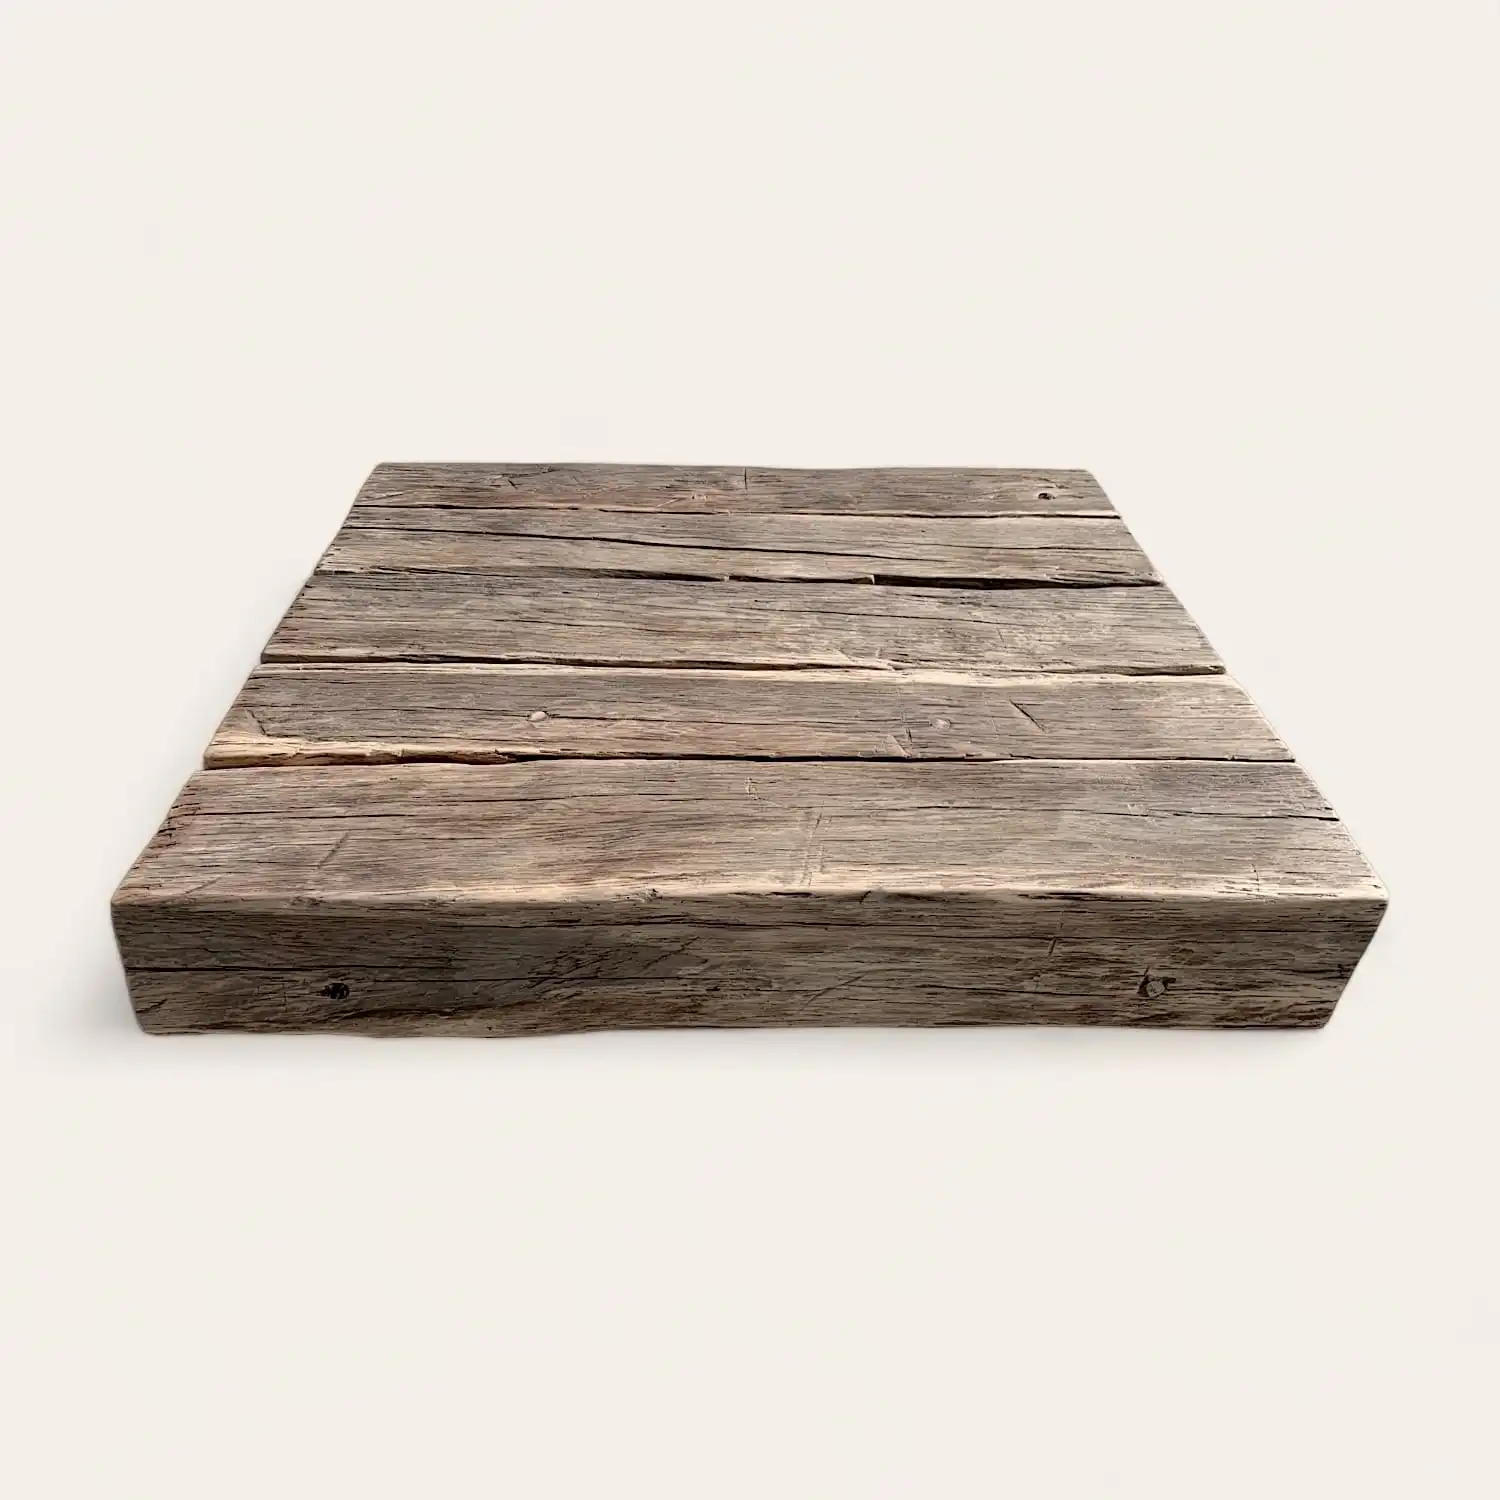  Un morceau de bois ancien posé sur une surface blanche. 